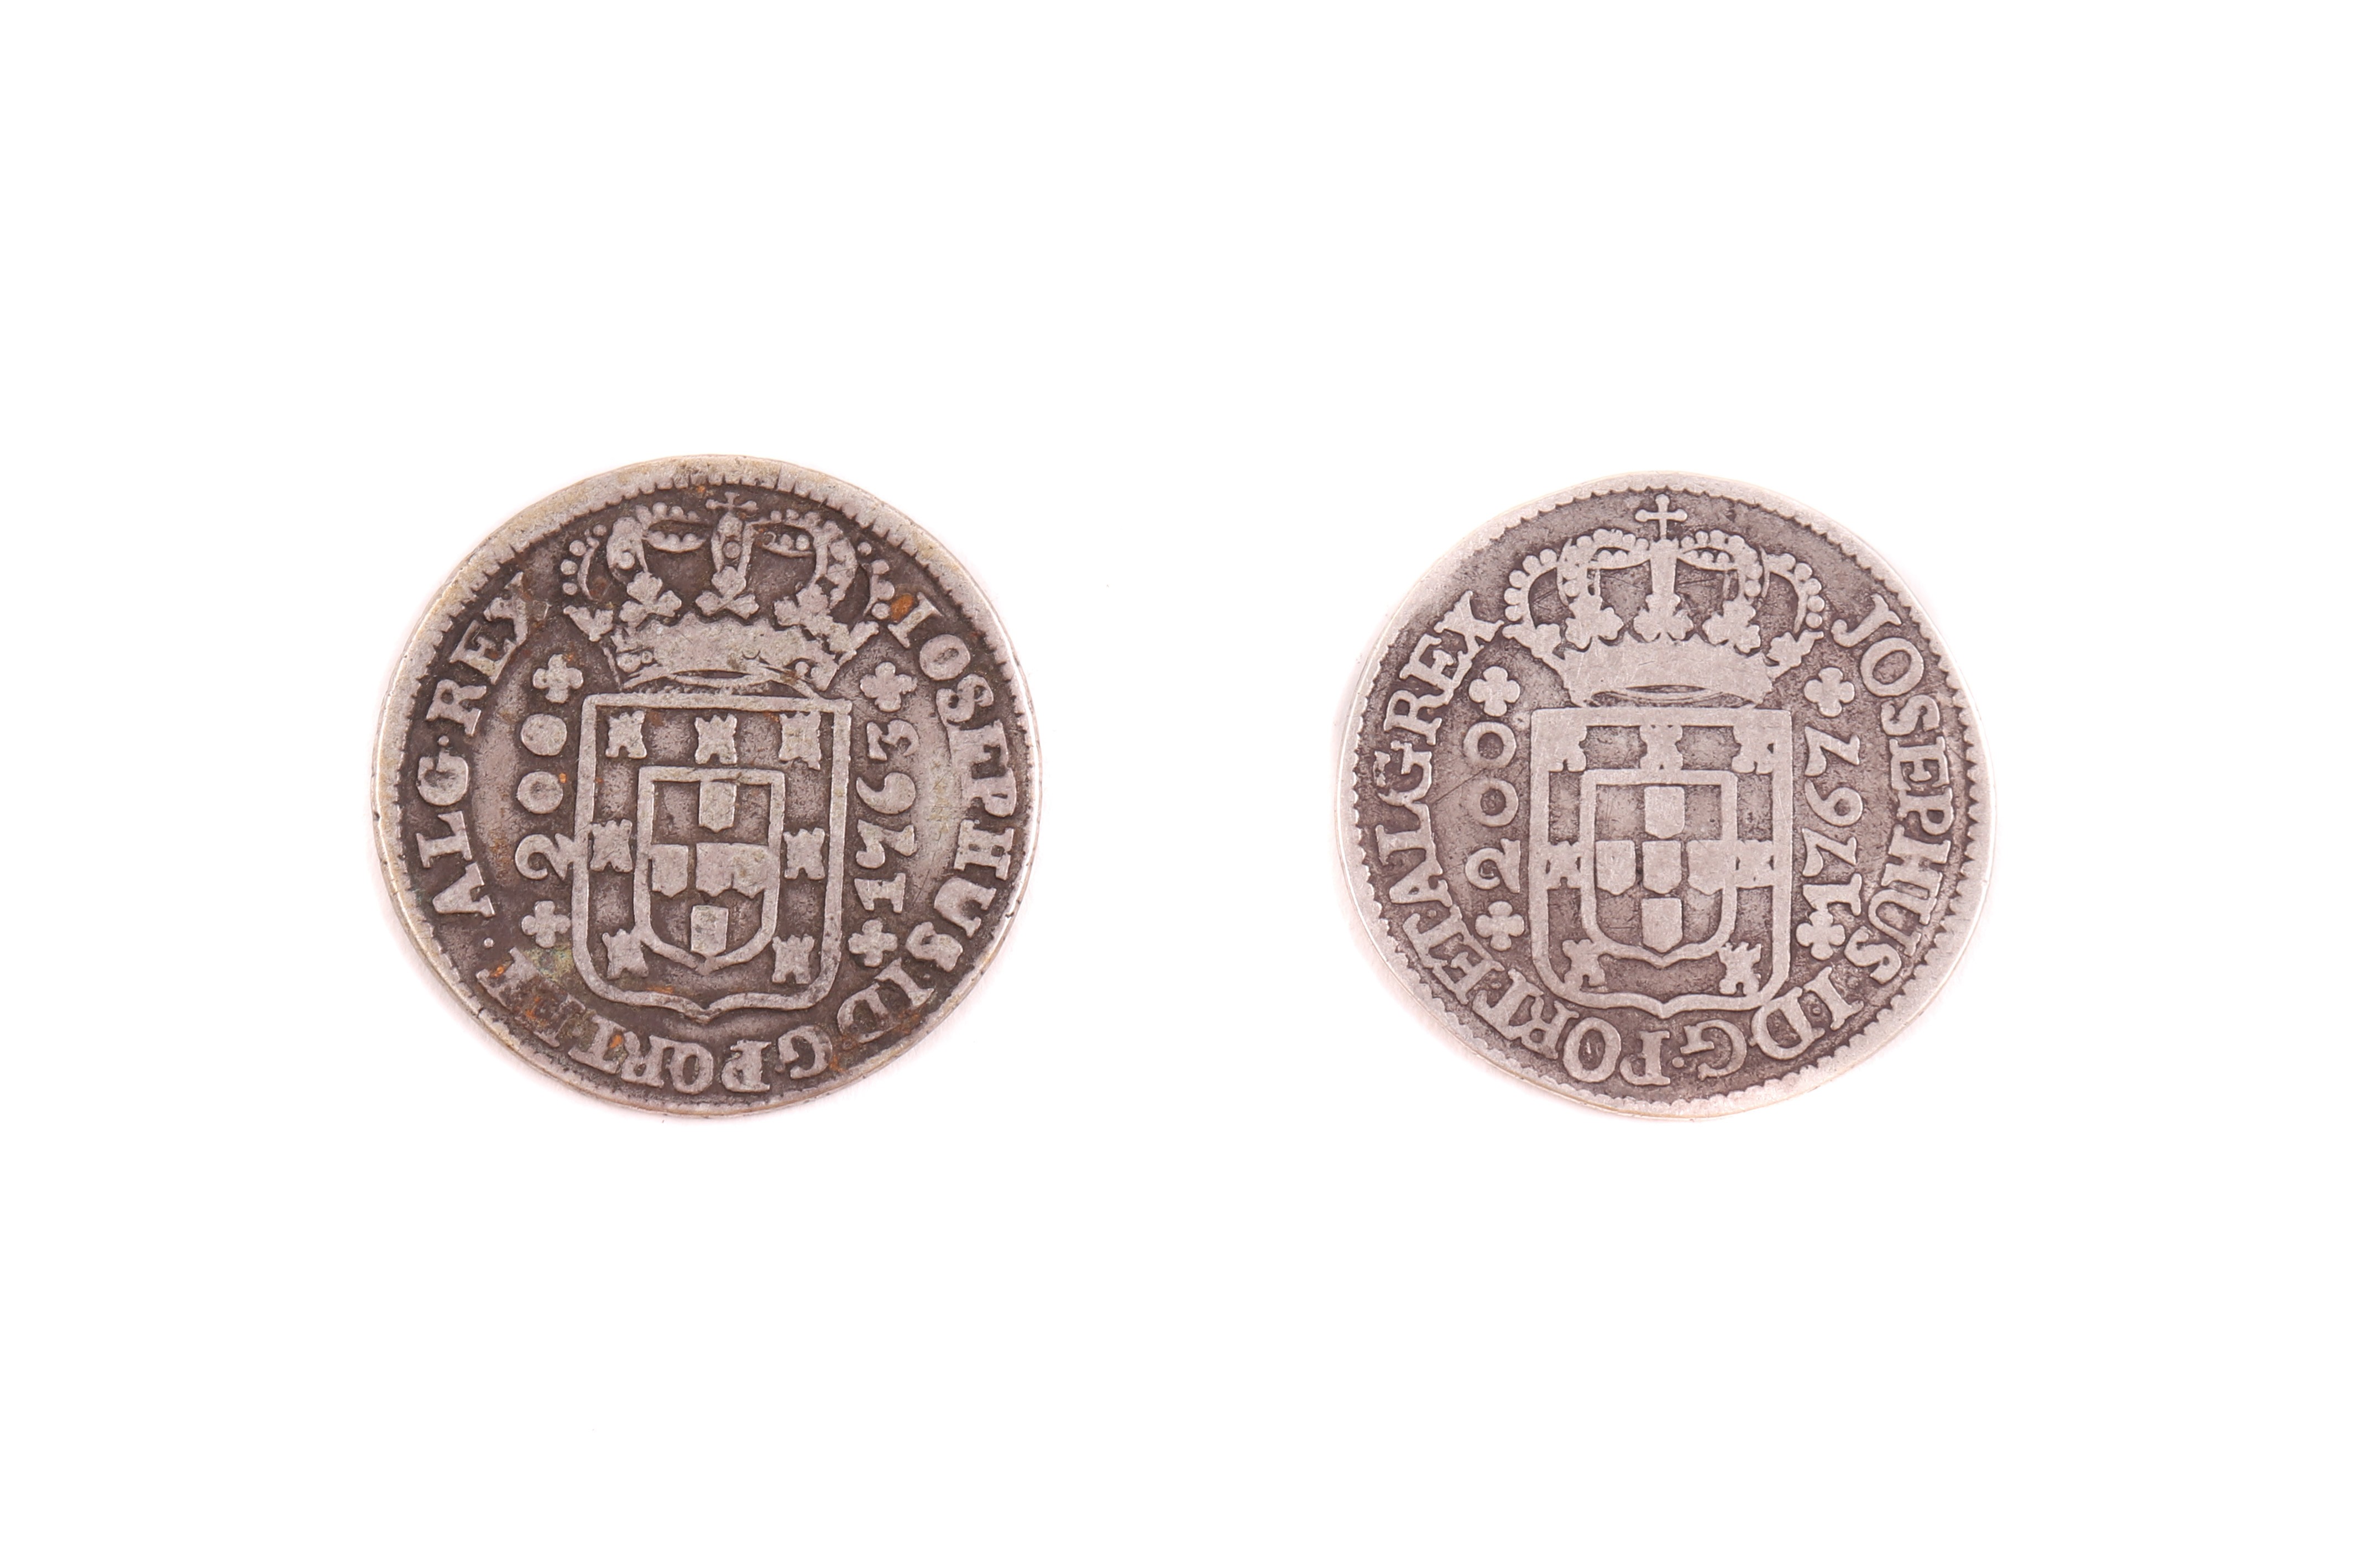 2 Moedas de 200 reis (12 vinténs), D. José, 1763 e 1767 - prata (2)